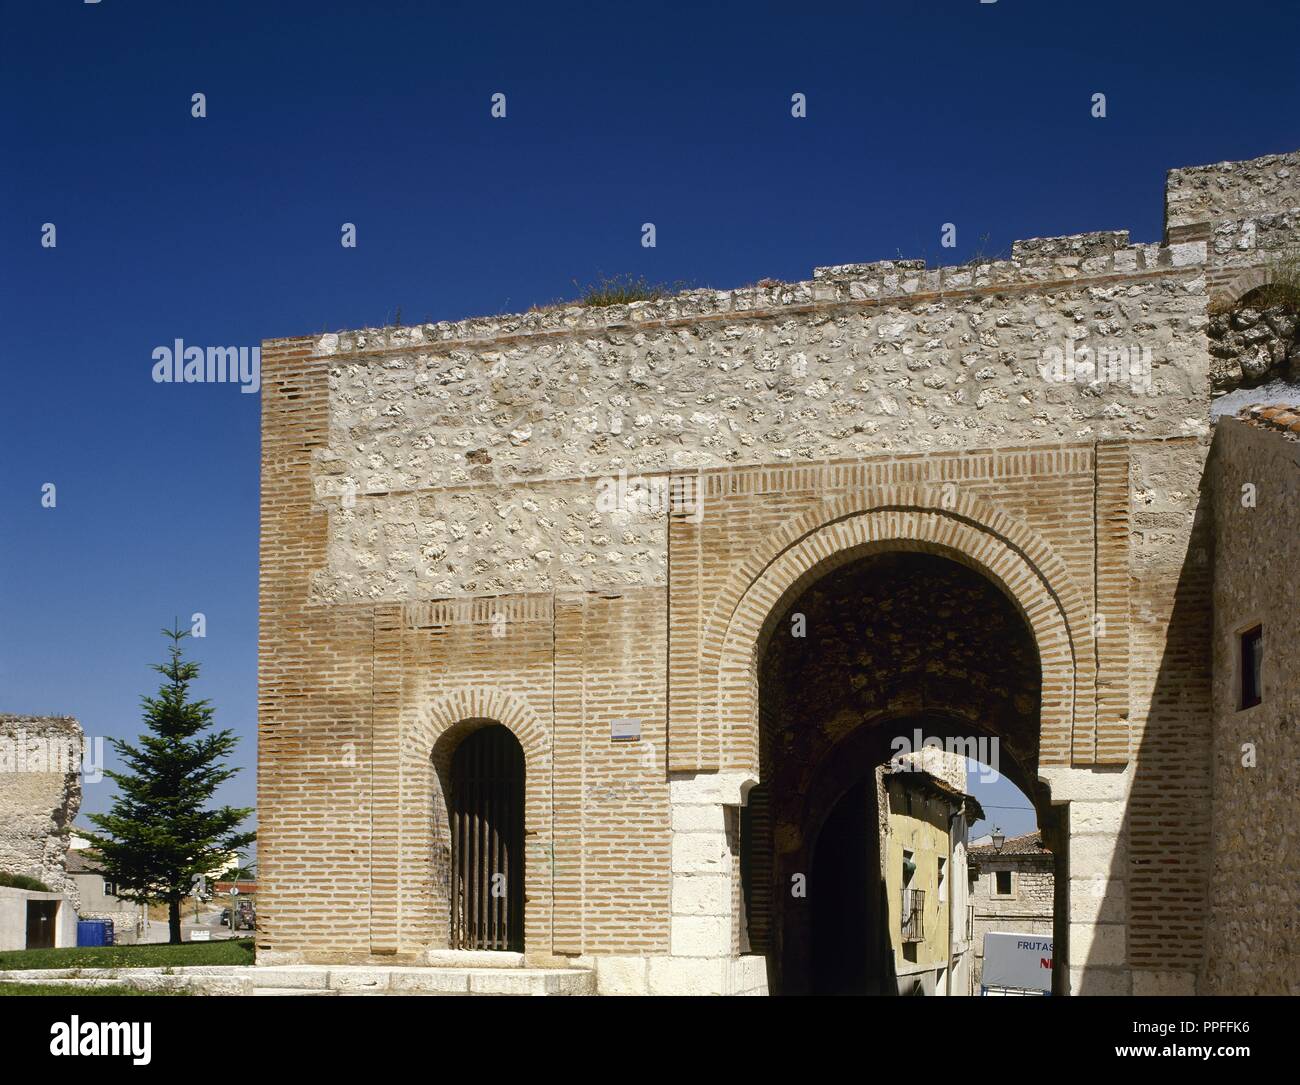 Cuellar, Provinz Segovia, Kastilien und Leon, Spanien. Tor des heiligen Basilius. Der Einzige der Wände, die seit der letzten Änderungen durchgeführt durch die Herzöge von Alburquerque erhalten geblieben ist. Ursprünglich war das Tor der Robledo genannt. Toledo - Typ maurische Architektur, aus dem 11. Jahrhundert. Stockfoto